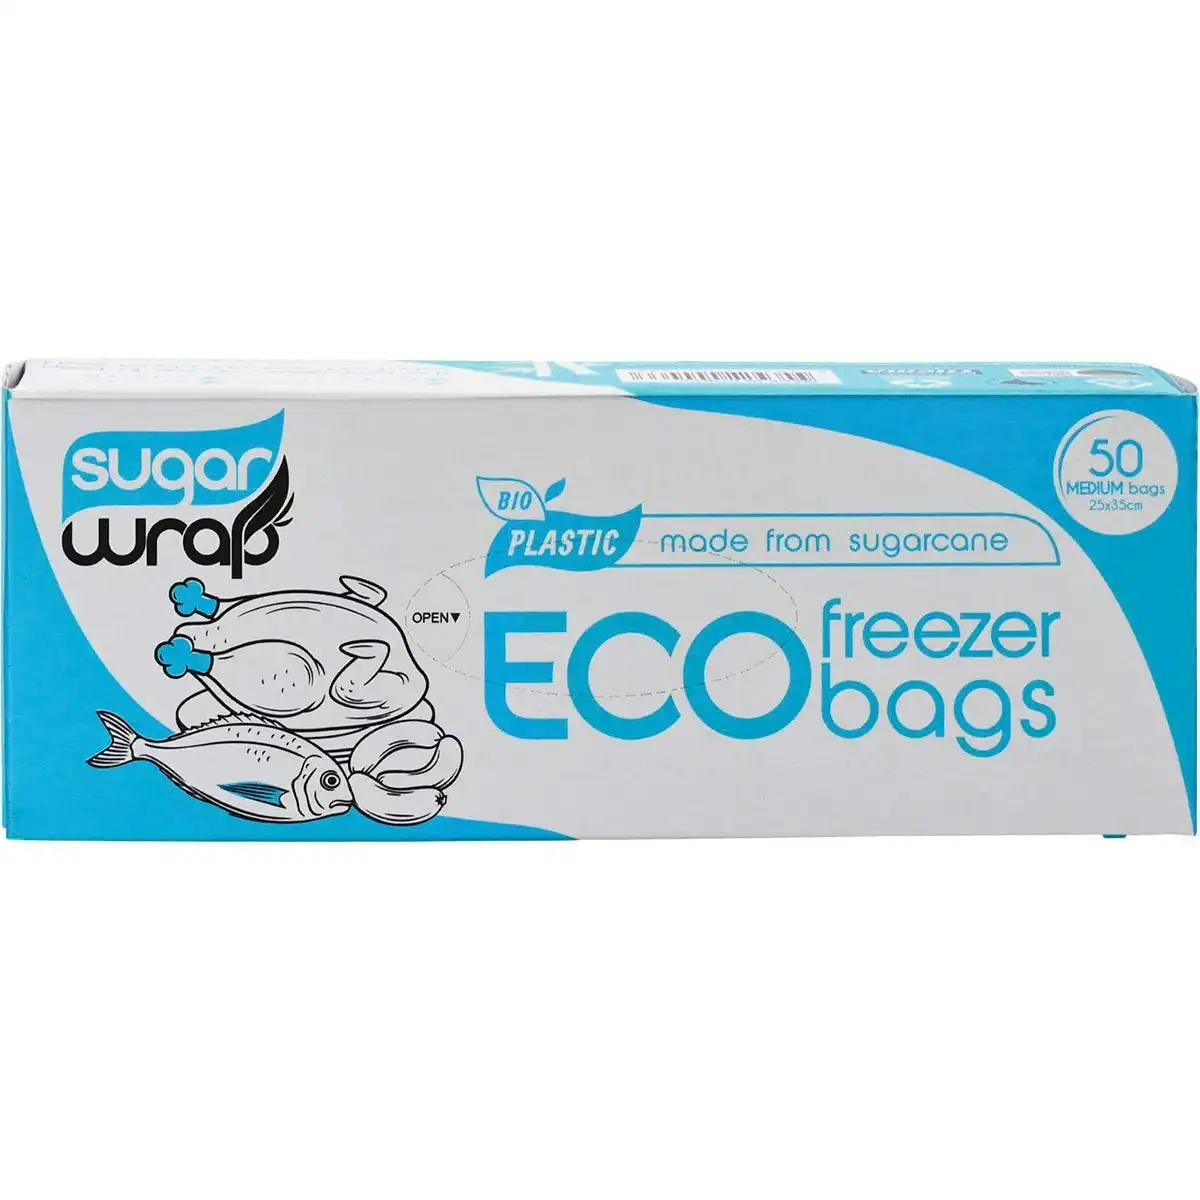 Sugarwrap Eco Freezer Bags Made from Sugarcane Medium 50pk